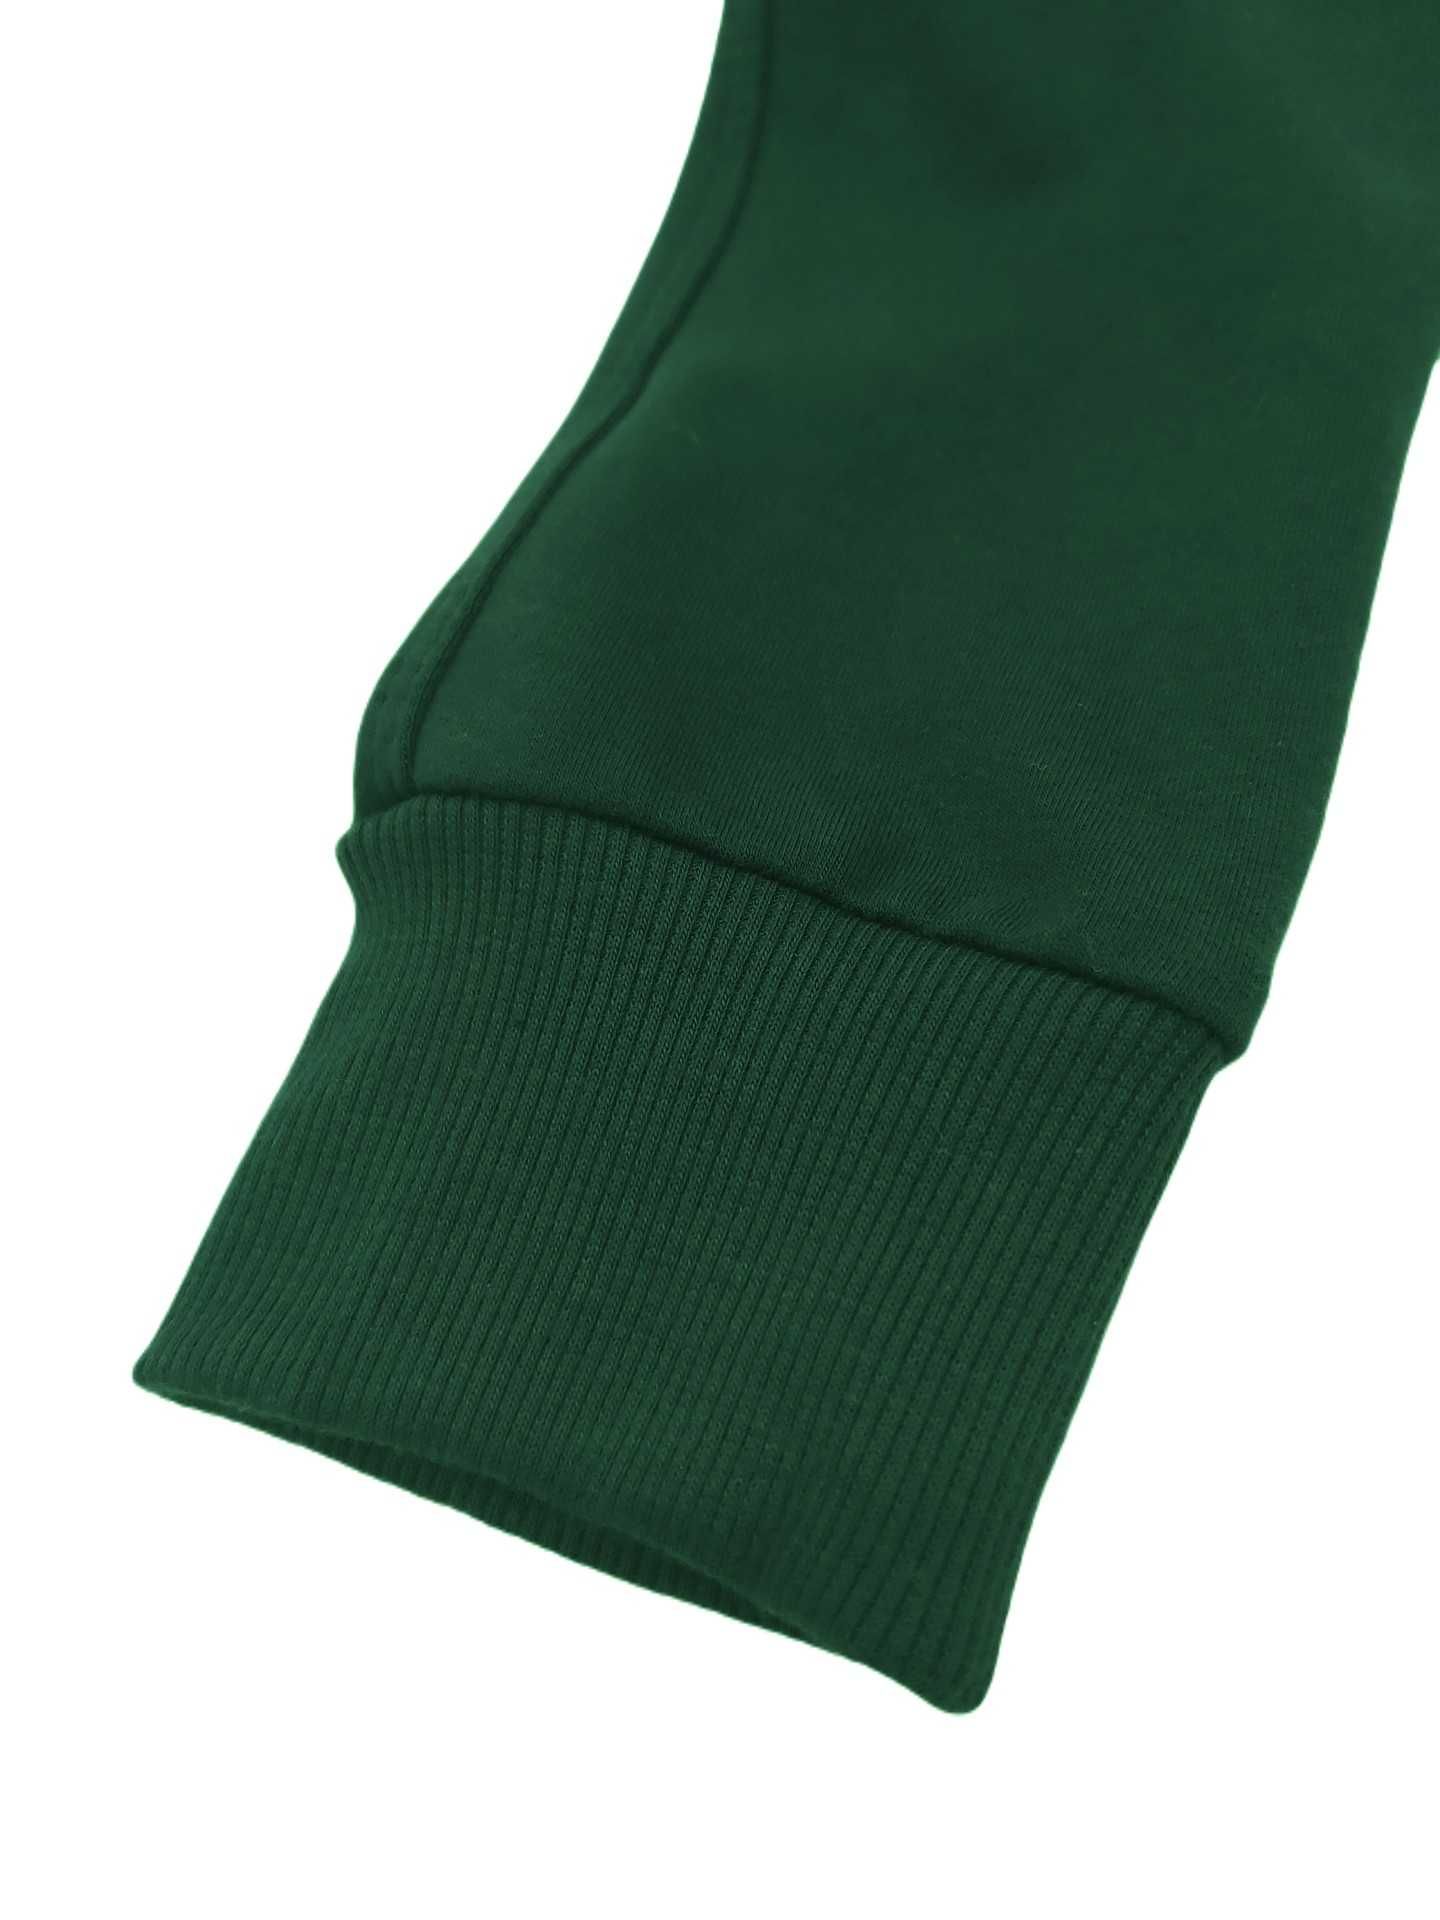 Spodnie dresowe zielone butelkowe  104 bawełna slim MROFI